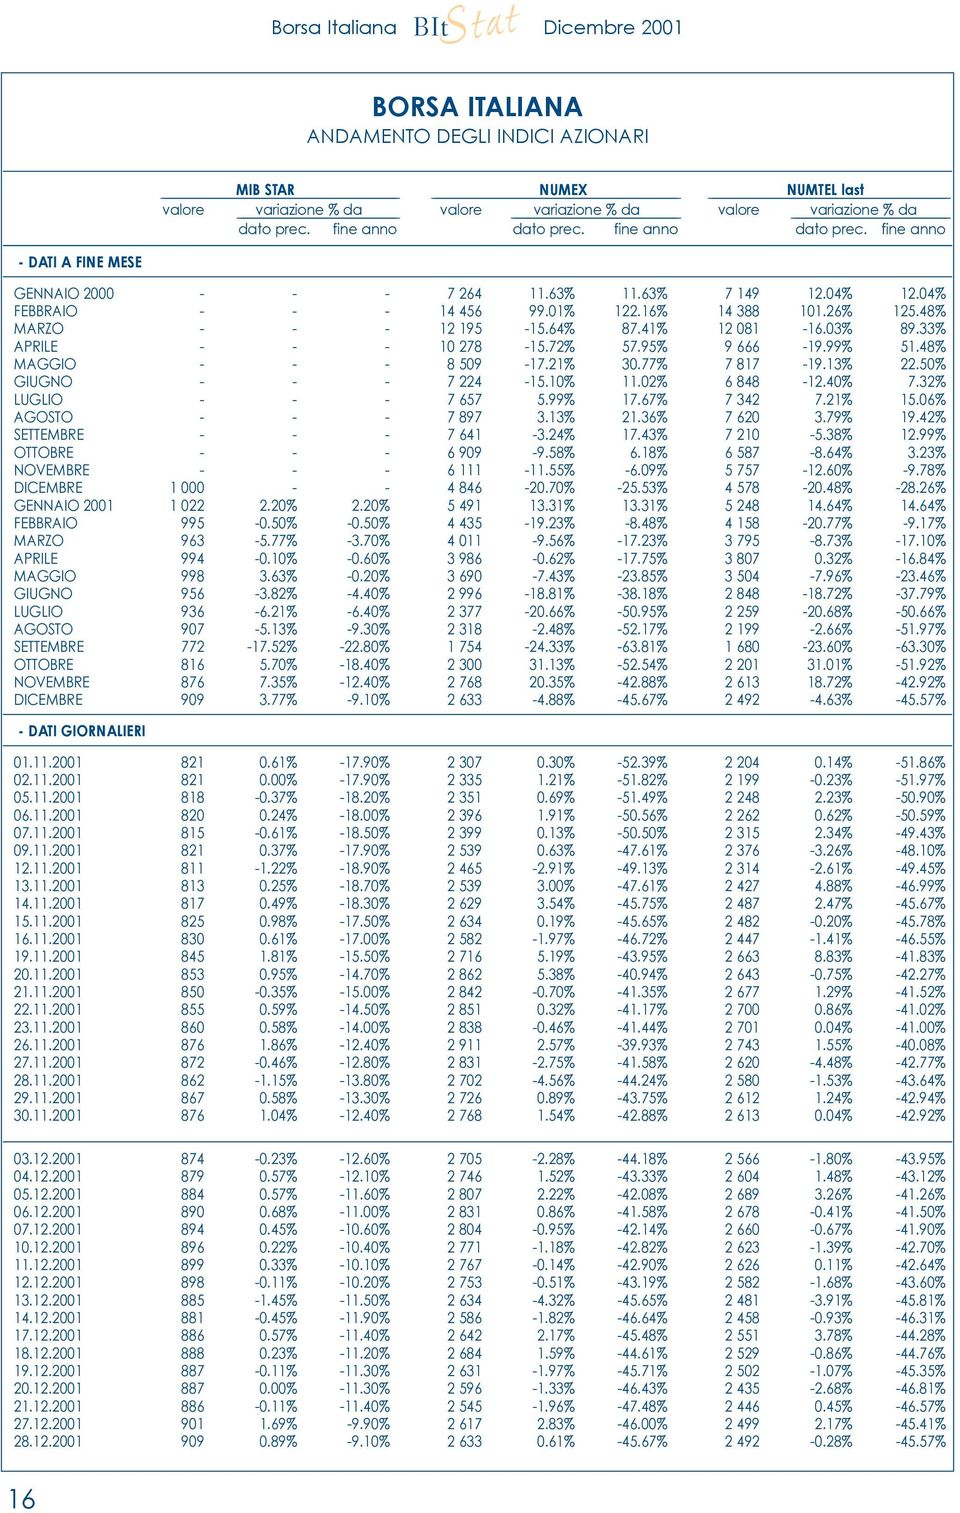 41% 12 081-16.03% 89.33% APRILE - - - 10 278-15.72% 57.95% 9 666-19.99% 51.48% MAGGIO - - - 8 509-17.21% 30.77% 7 817-19.13% 22.50% GIUGNO - - - 7 224-15.10% 11.02% 6 848-12.40% 7.